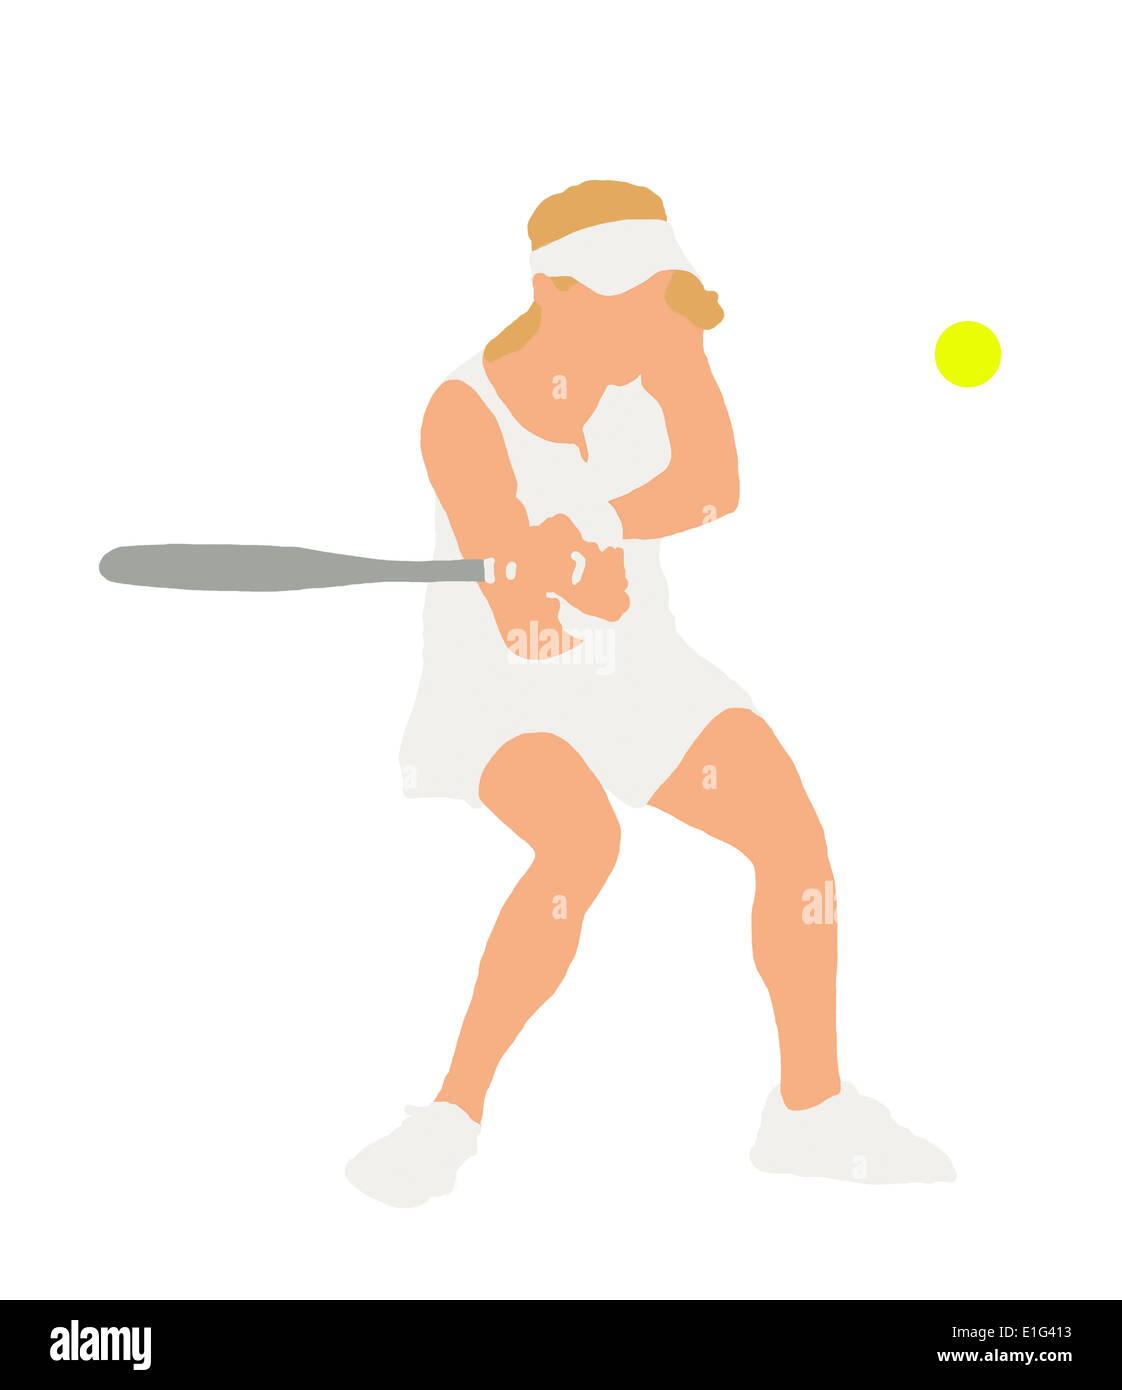 Tennis player jouer en revers en double [fondée sur une photo de Agnieszka Radwanska] Banque D'Images